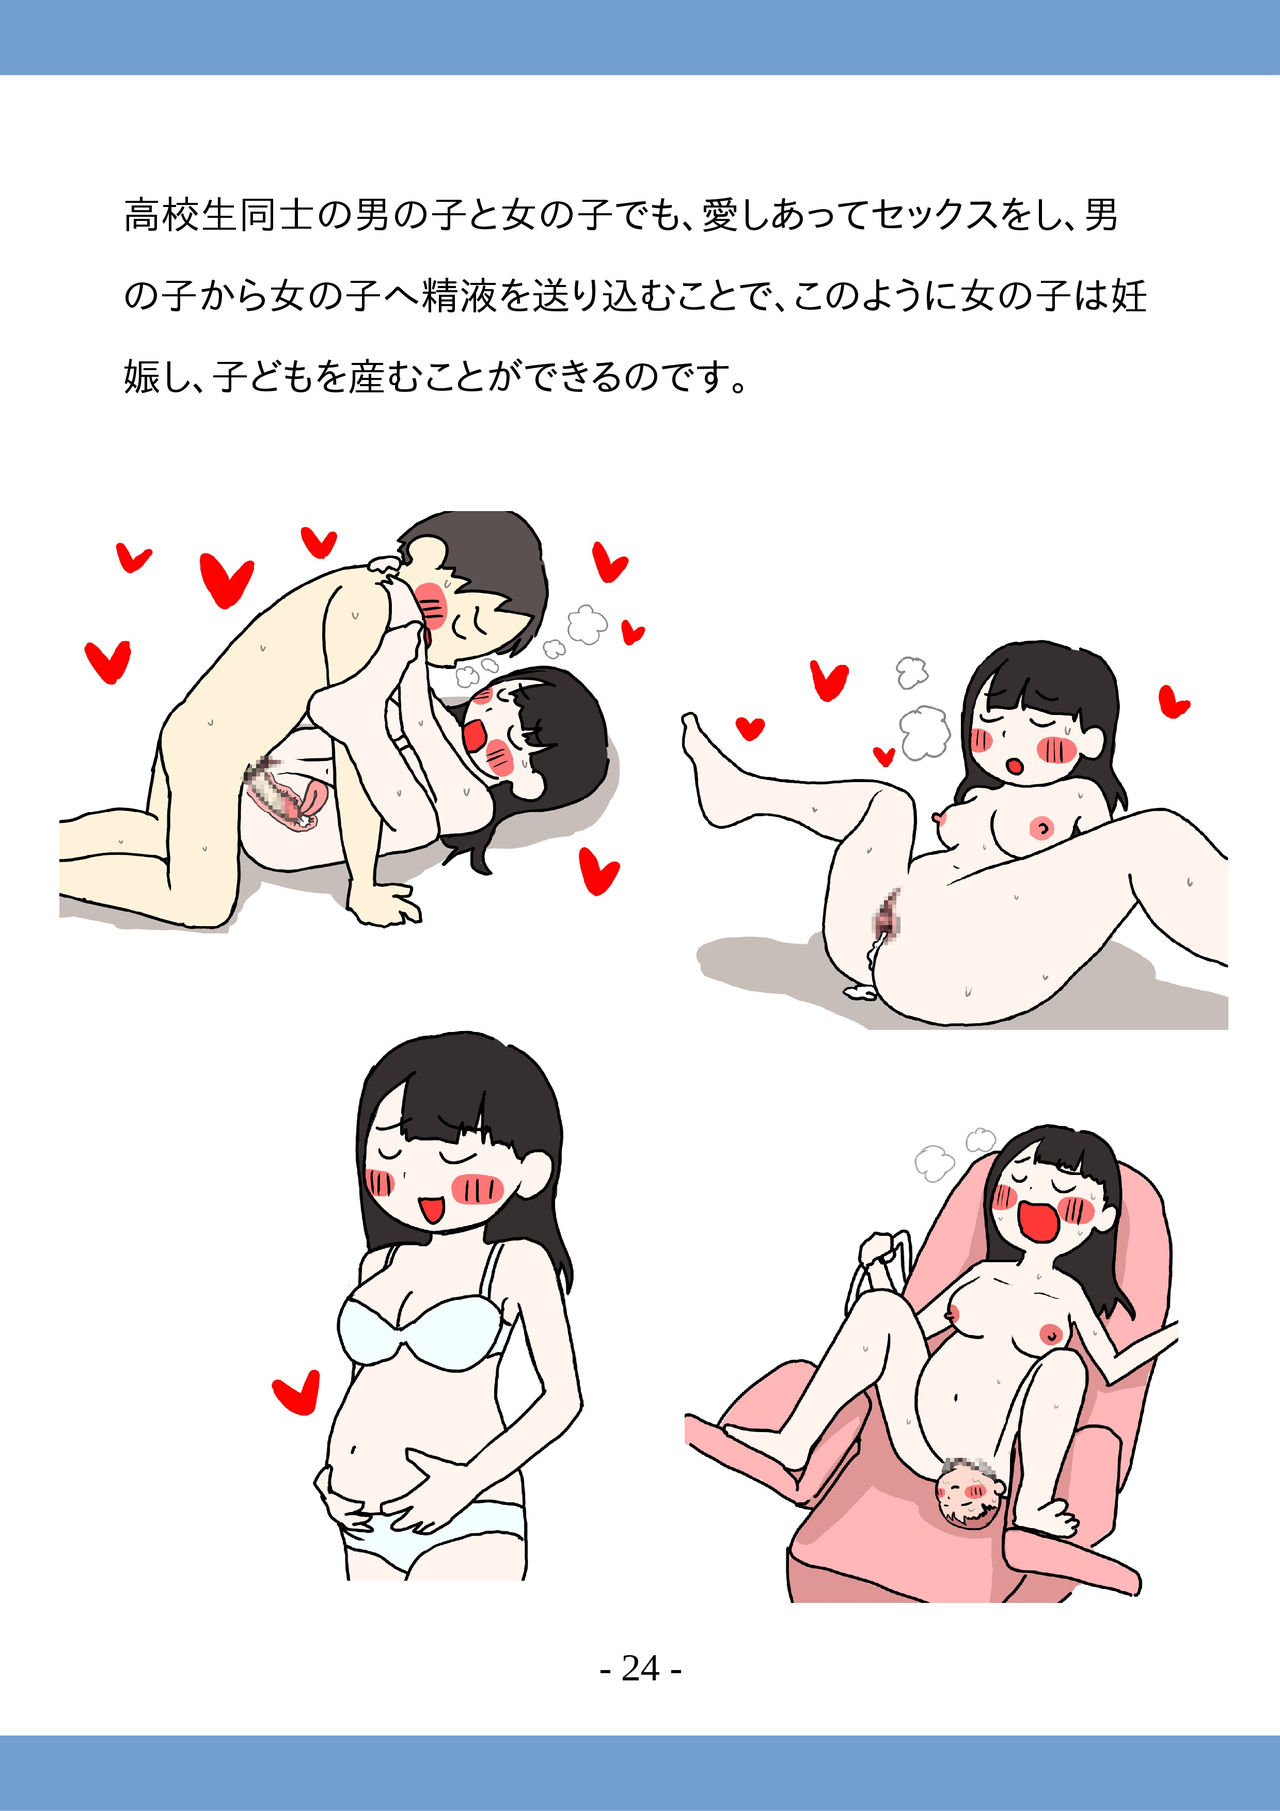 [poza] Koukousei no Tame no Sex Kouza -Koukousei Doushi de no Sex to Ninshin- page 24 full